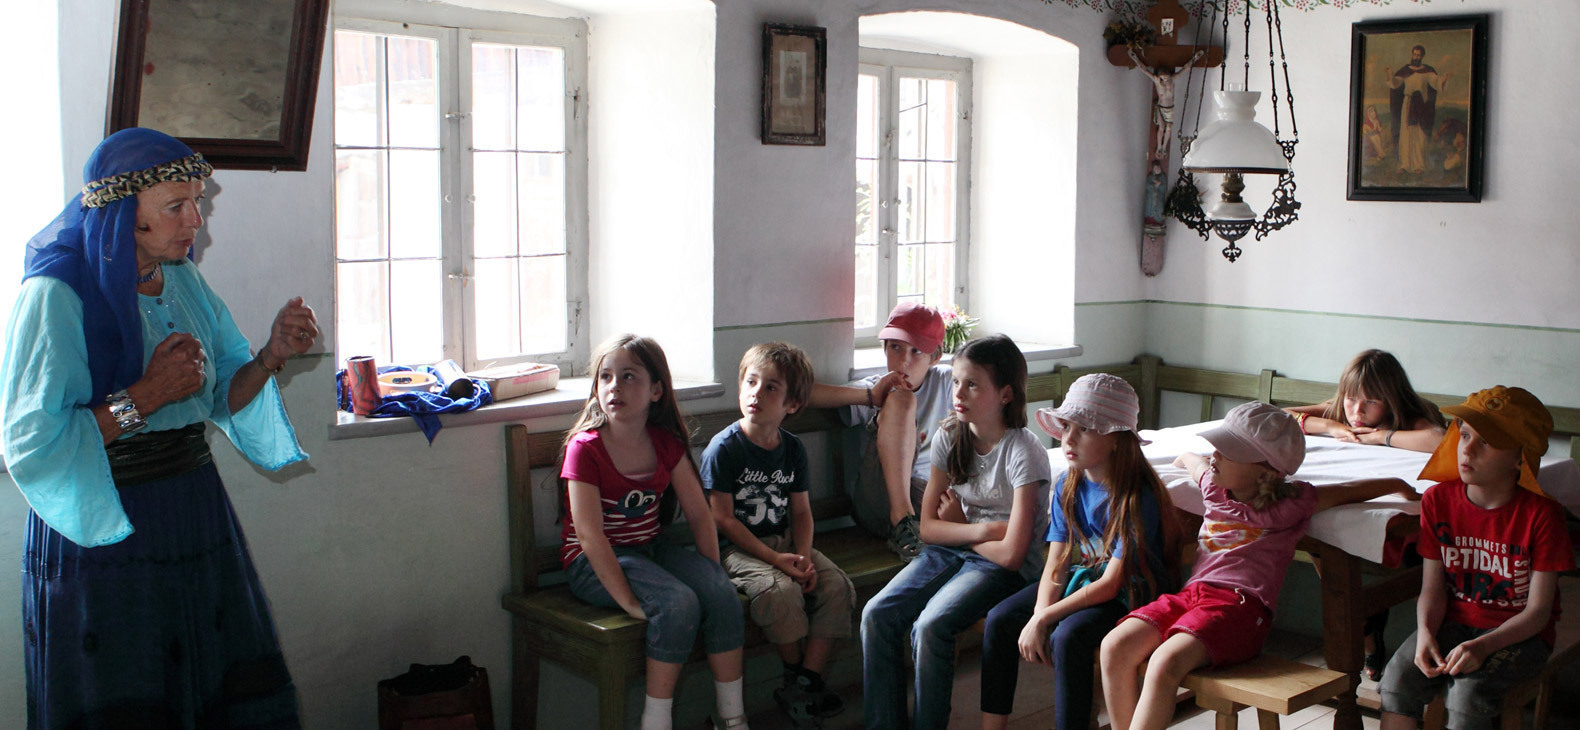 In einer geräumigen Stube in einem alten Bauernhaus: Eine Frau mit blauem Kopftuch und angehobenen Armen spricht zu einer Gruppe sitzender Kinder, die ihr gebannt Zuhörern.